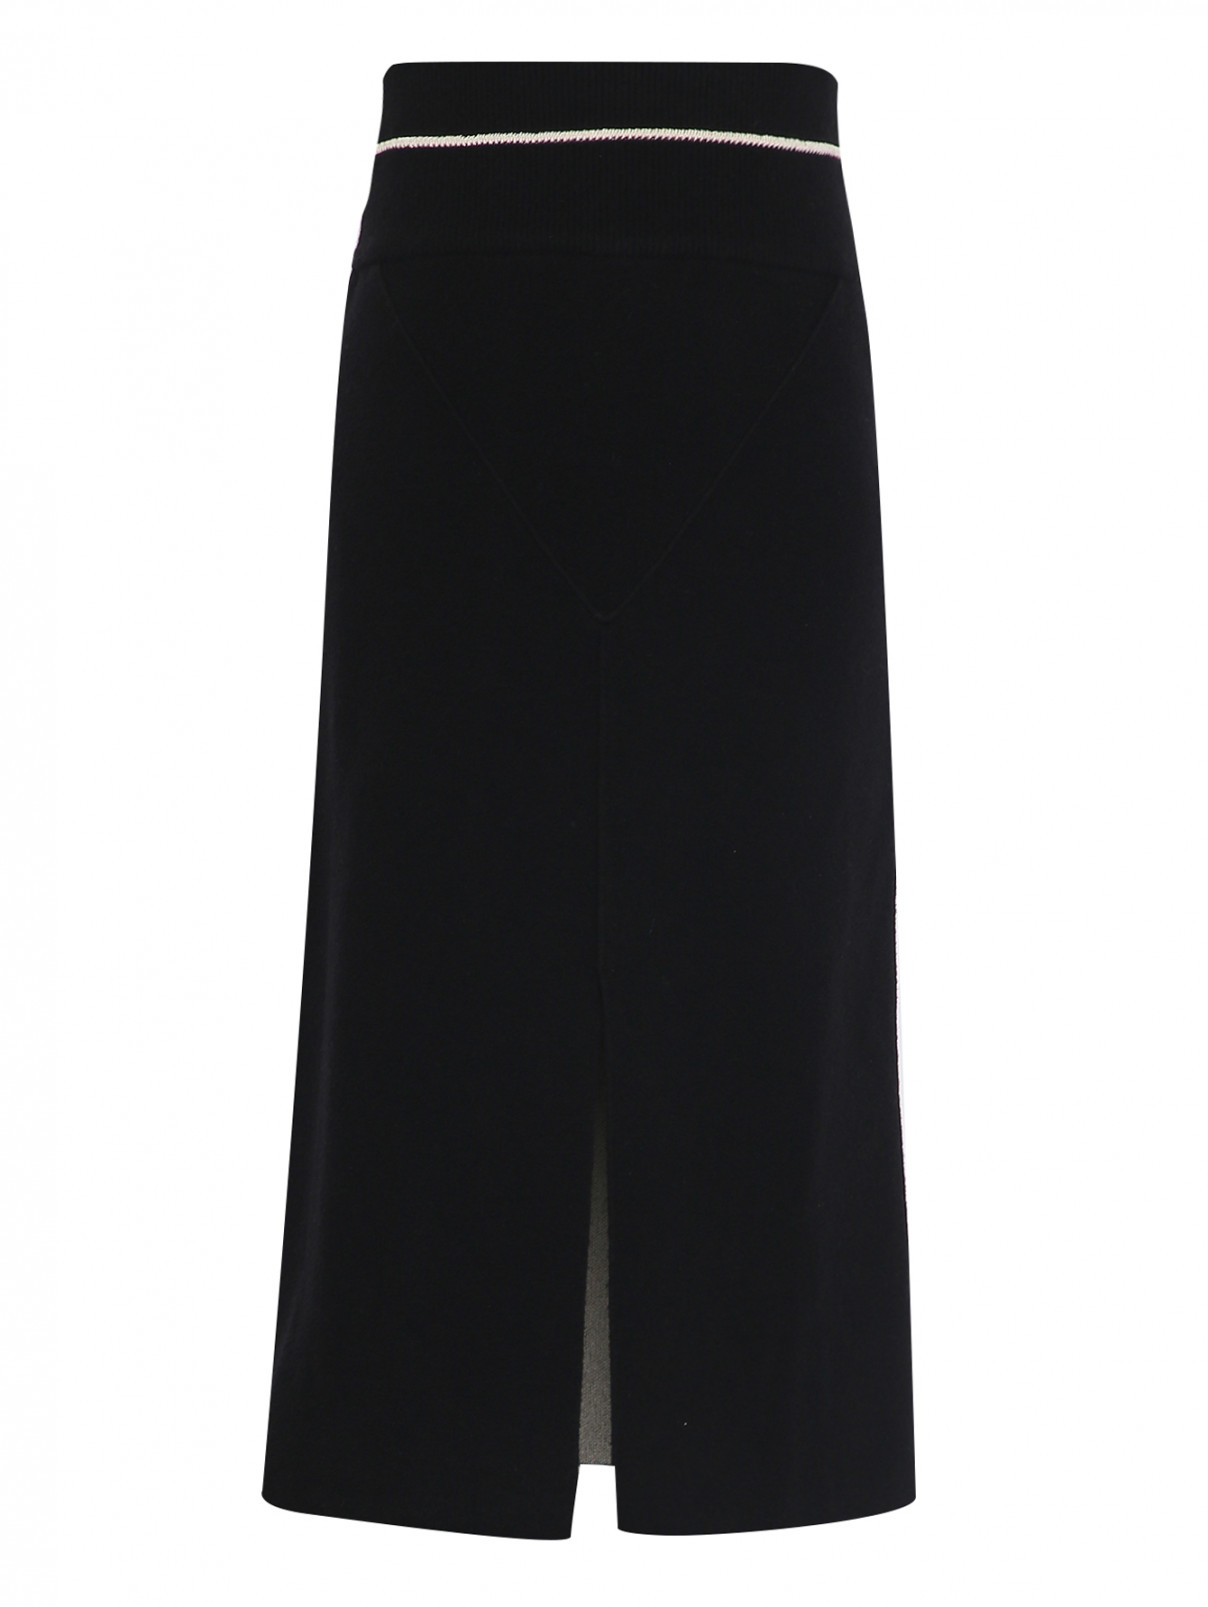 Трикотажная юбка с разрезом Moncler  –  Общий вид  – Цвет:  Черный